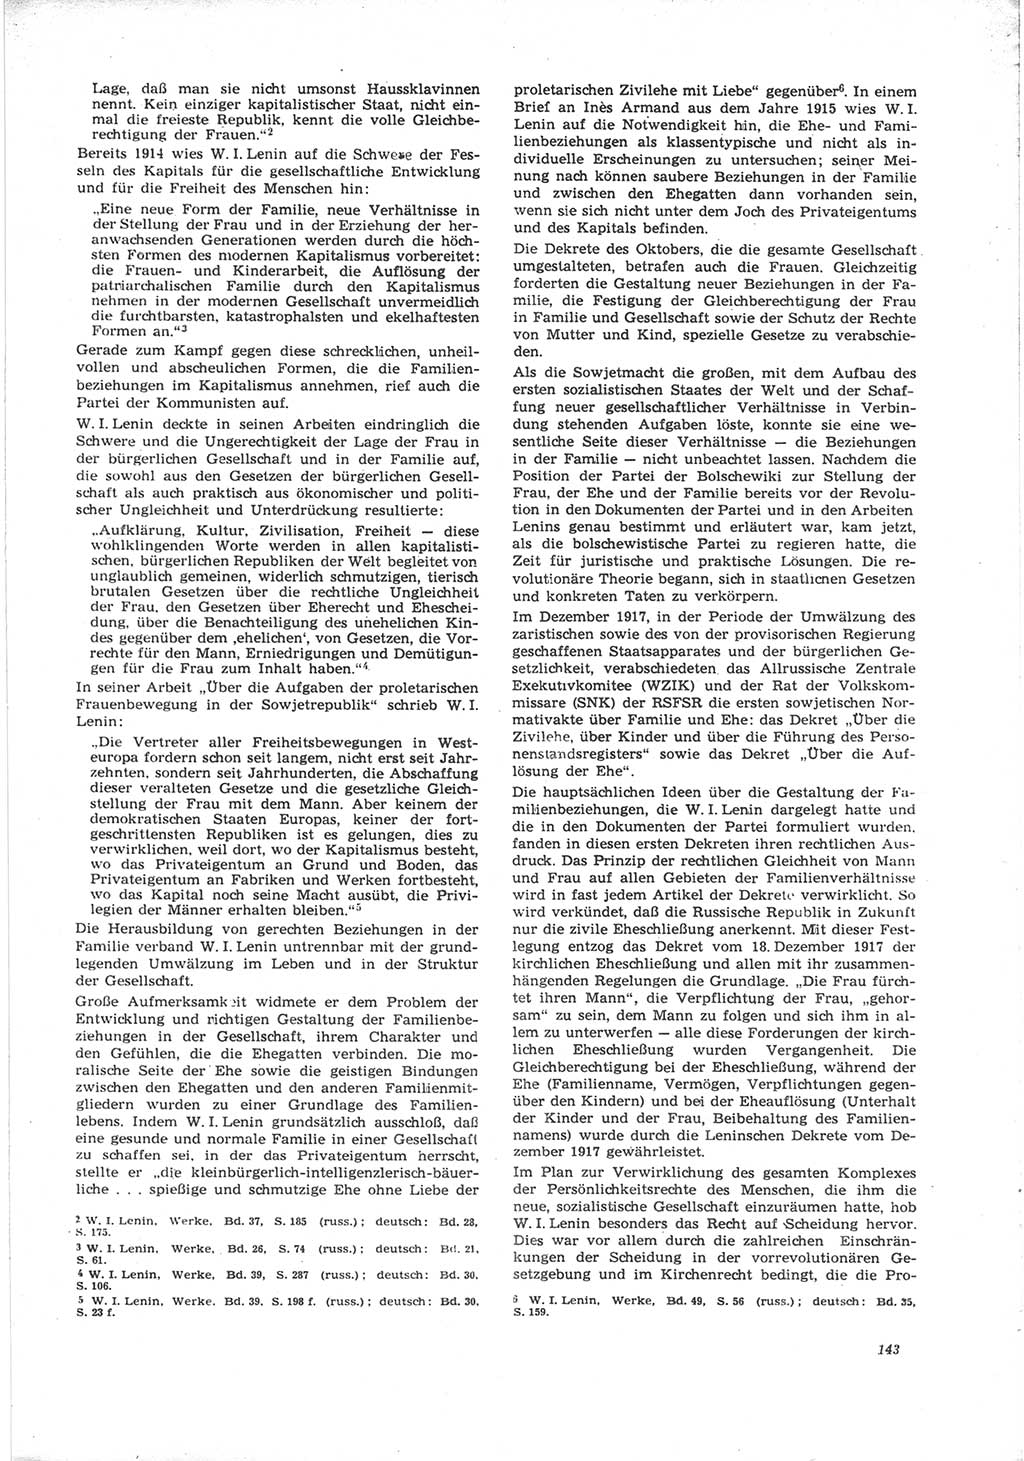 Neue Justiz (NJ), Zeitschrift für Recht und Rechtswissenschaft [Deutsche Demokratische Republik (DDR)], 24. Jahrgang 1970, Seite 143 (NJ DDR 1970, S. 143)